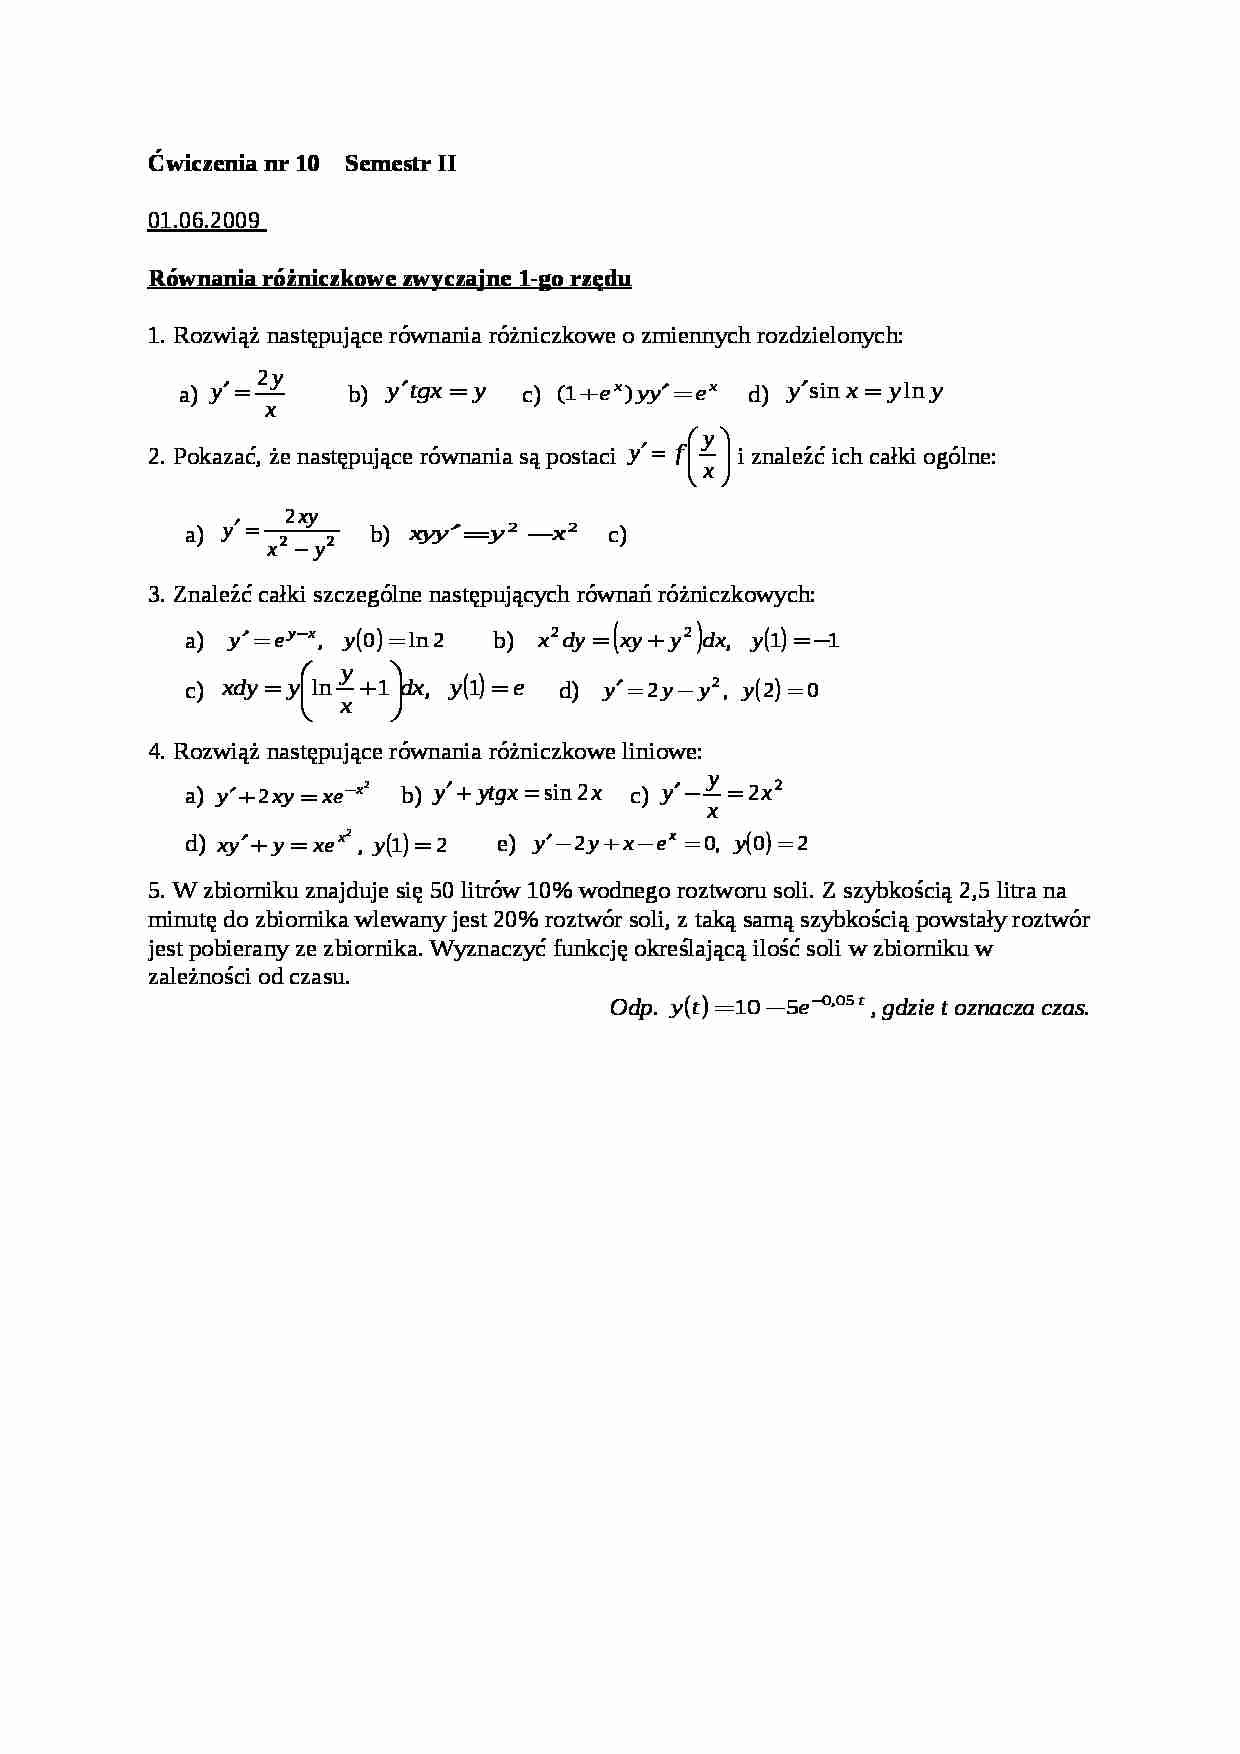 Równania rózniczkowe zwyczajne 1-go rzedu - cwiczenia - strona 1